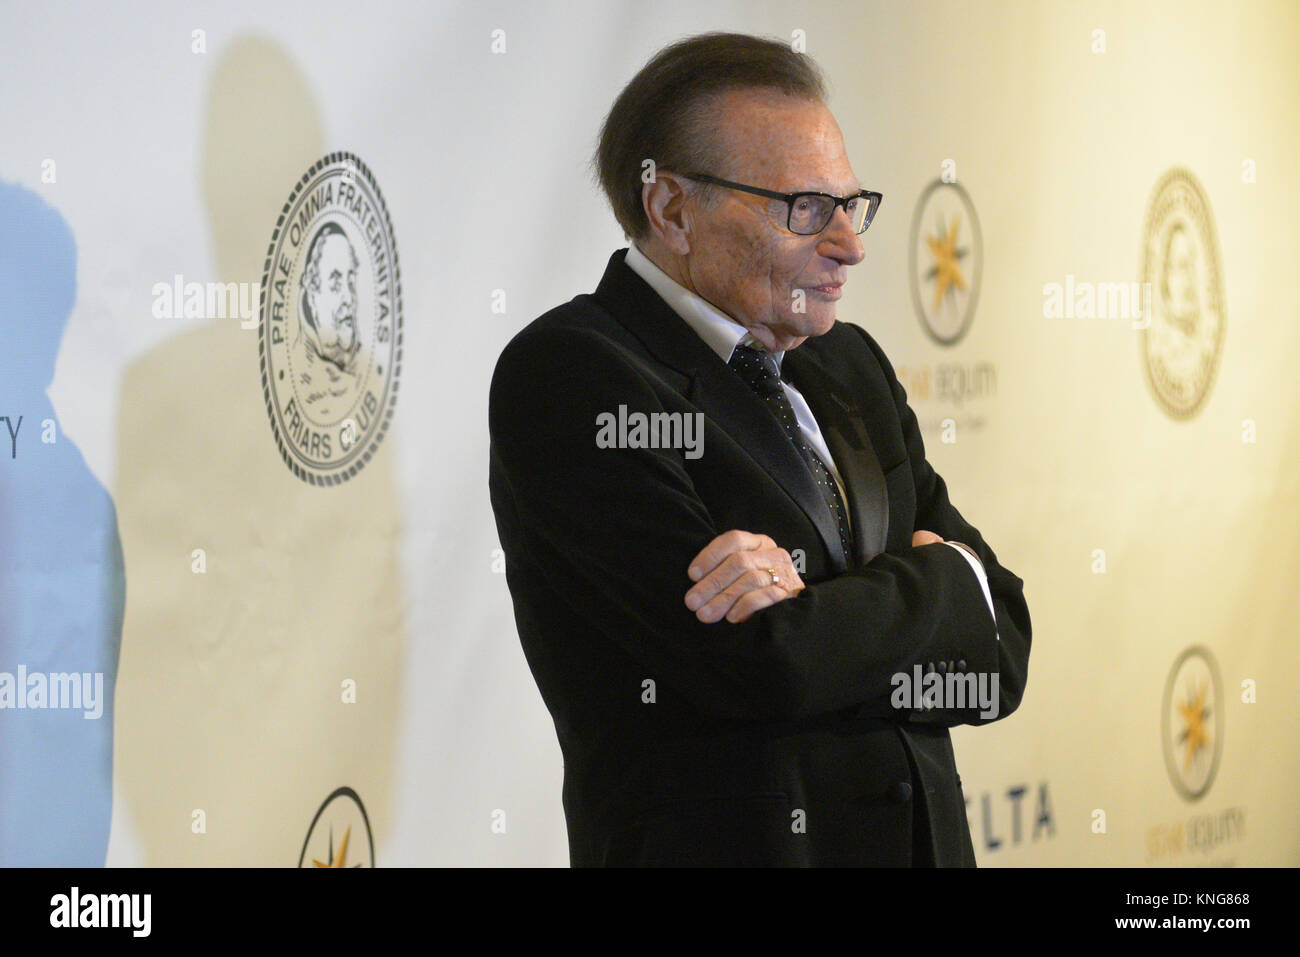 Larry King besucht die Brüder Club ehrt Tony Bennett mit der Unterhaltung Icon Award der New York Sheraton Hotel am 20. Juni 2016 in New York. Stockfoto